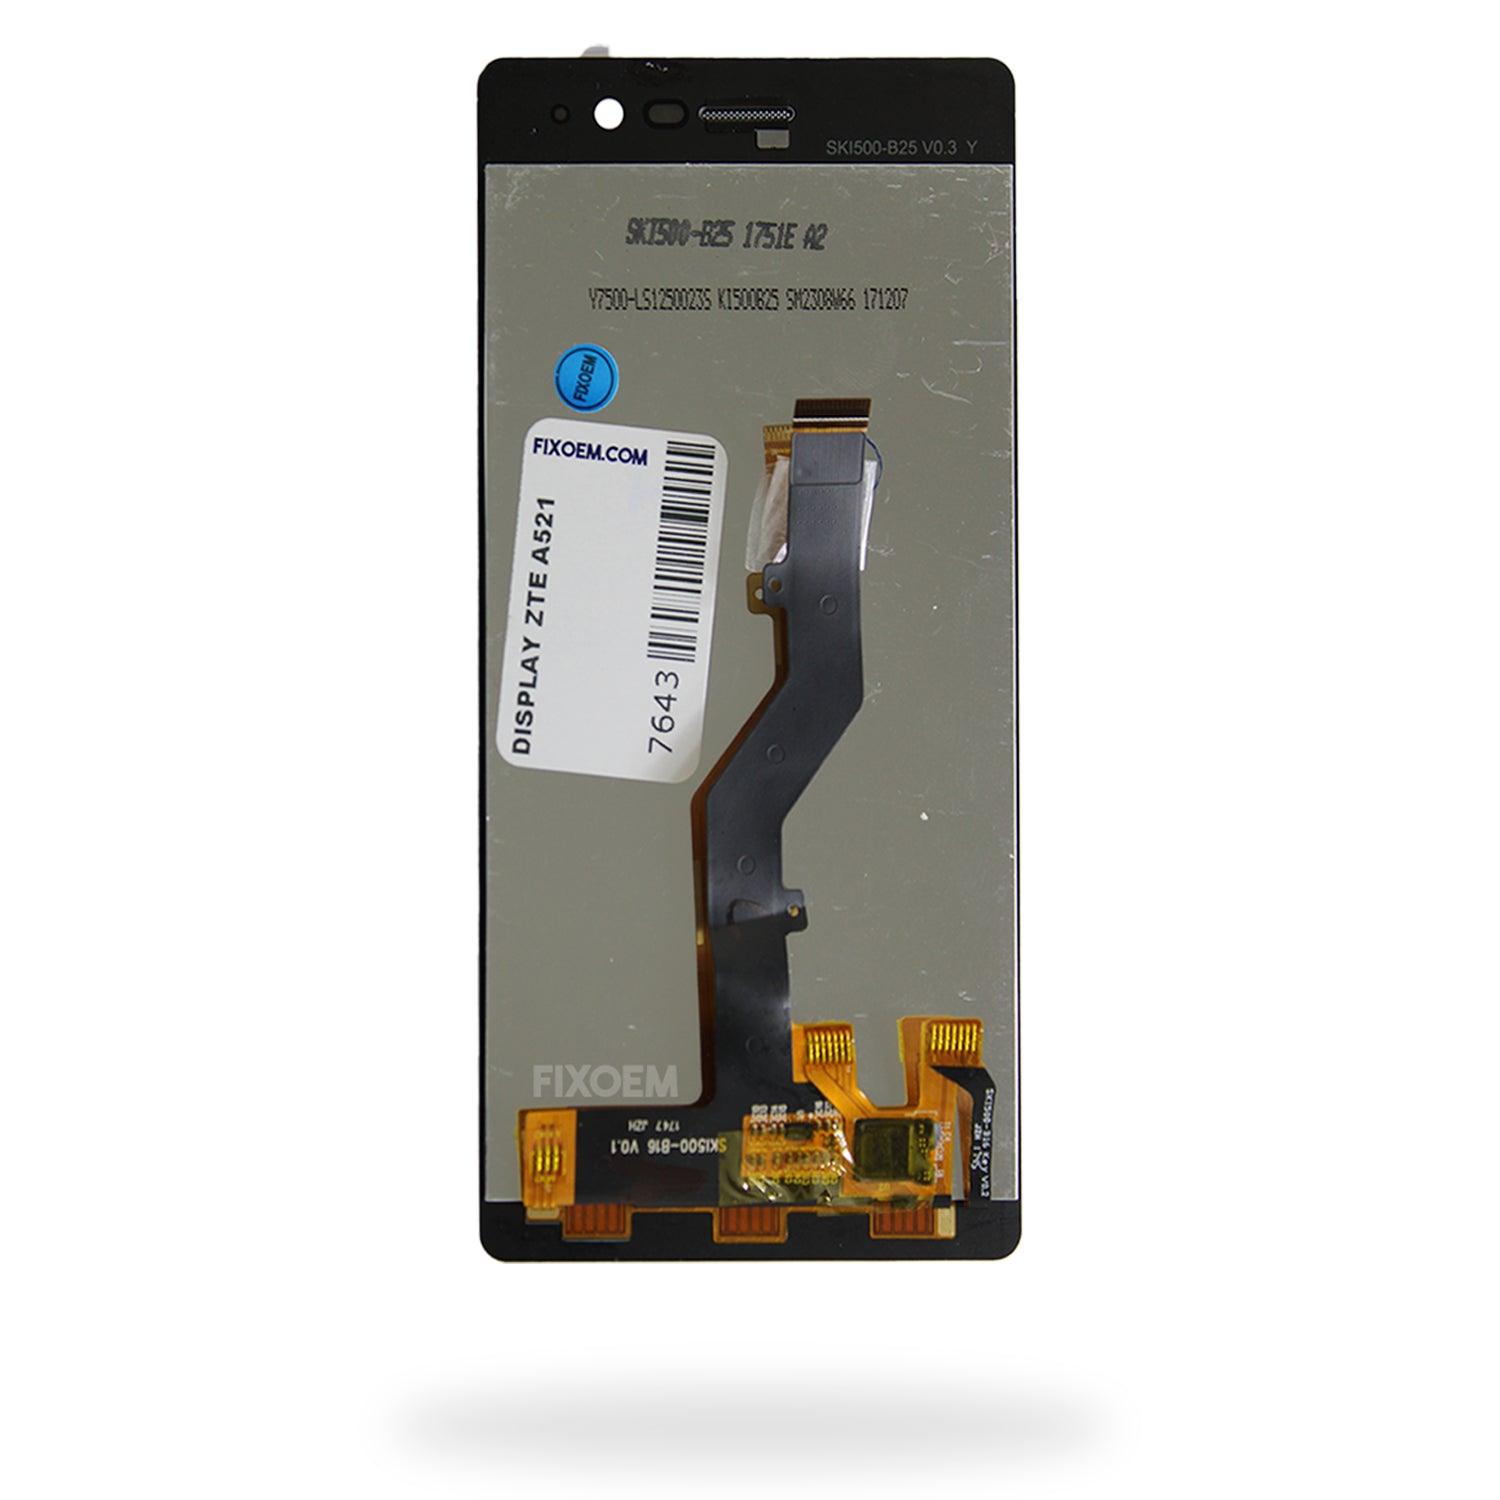 Display Zte Blade A521 IPS a solo $ 250.00 Refaccion y puestos celulares, refurbish y microelectronica.- FixOEM